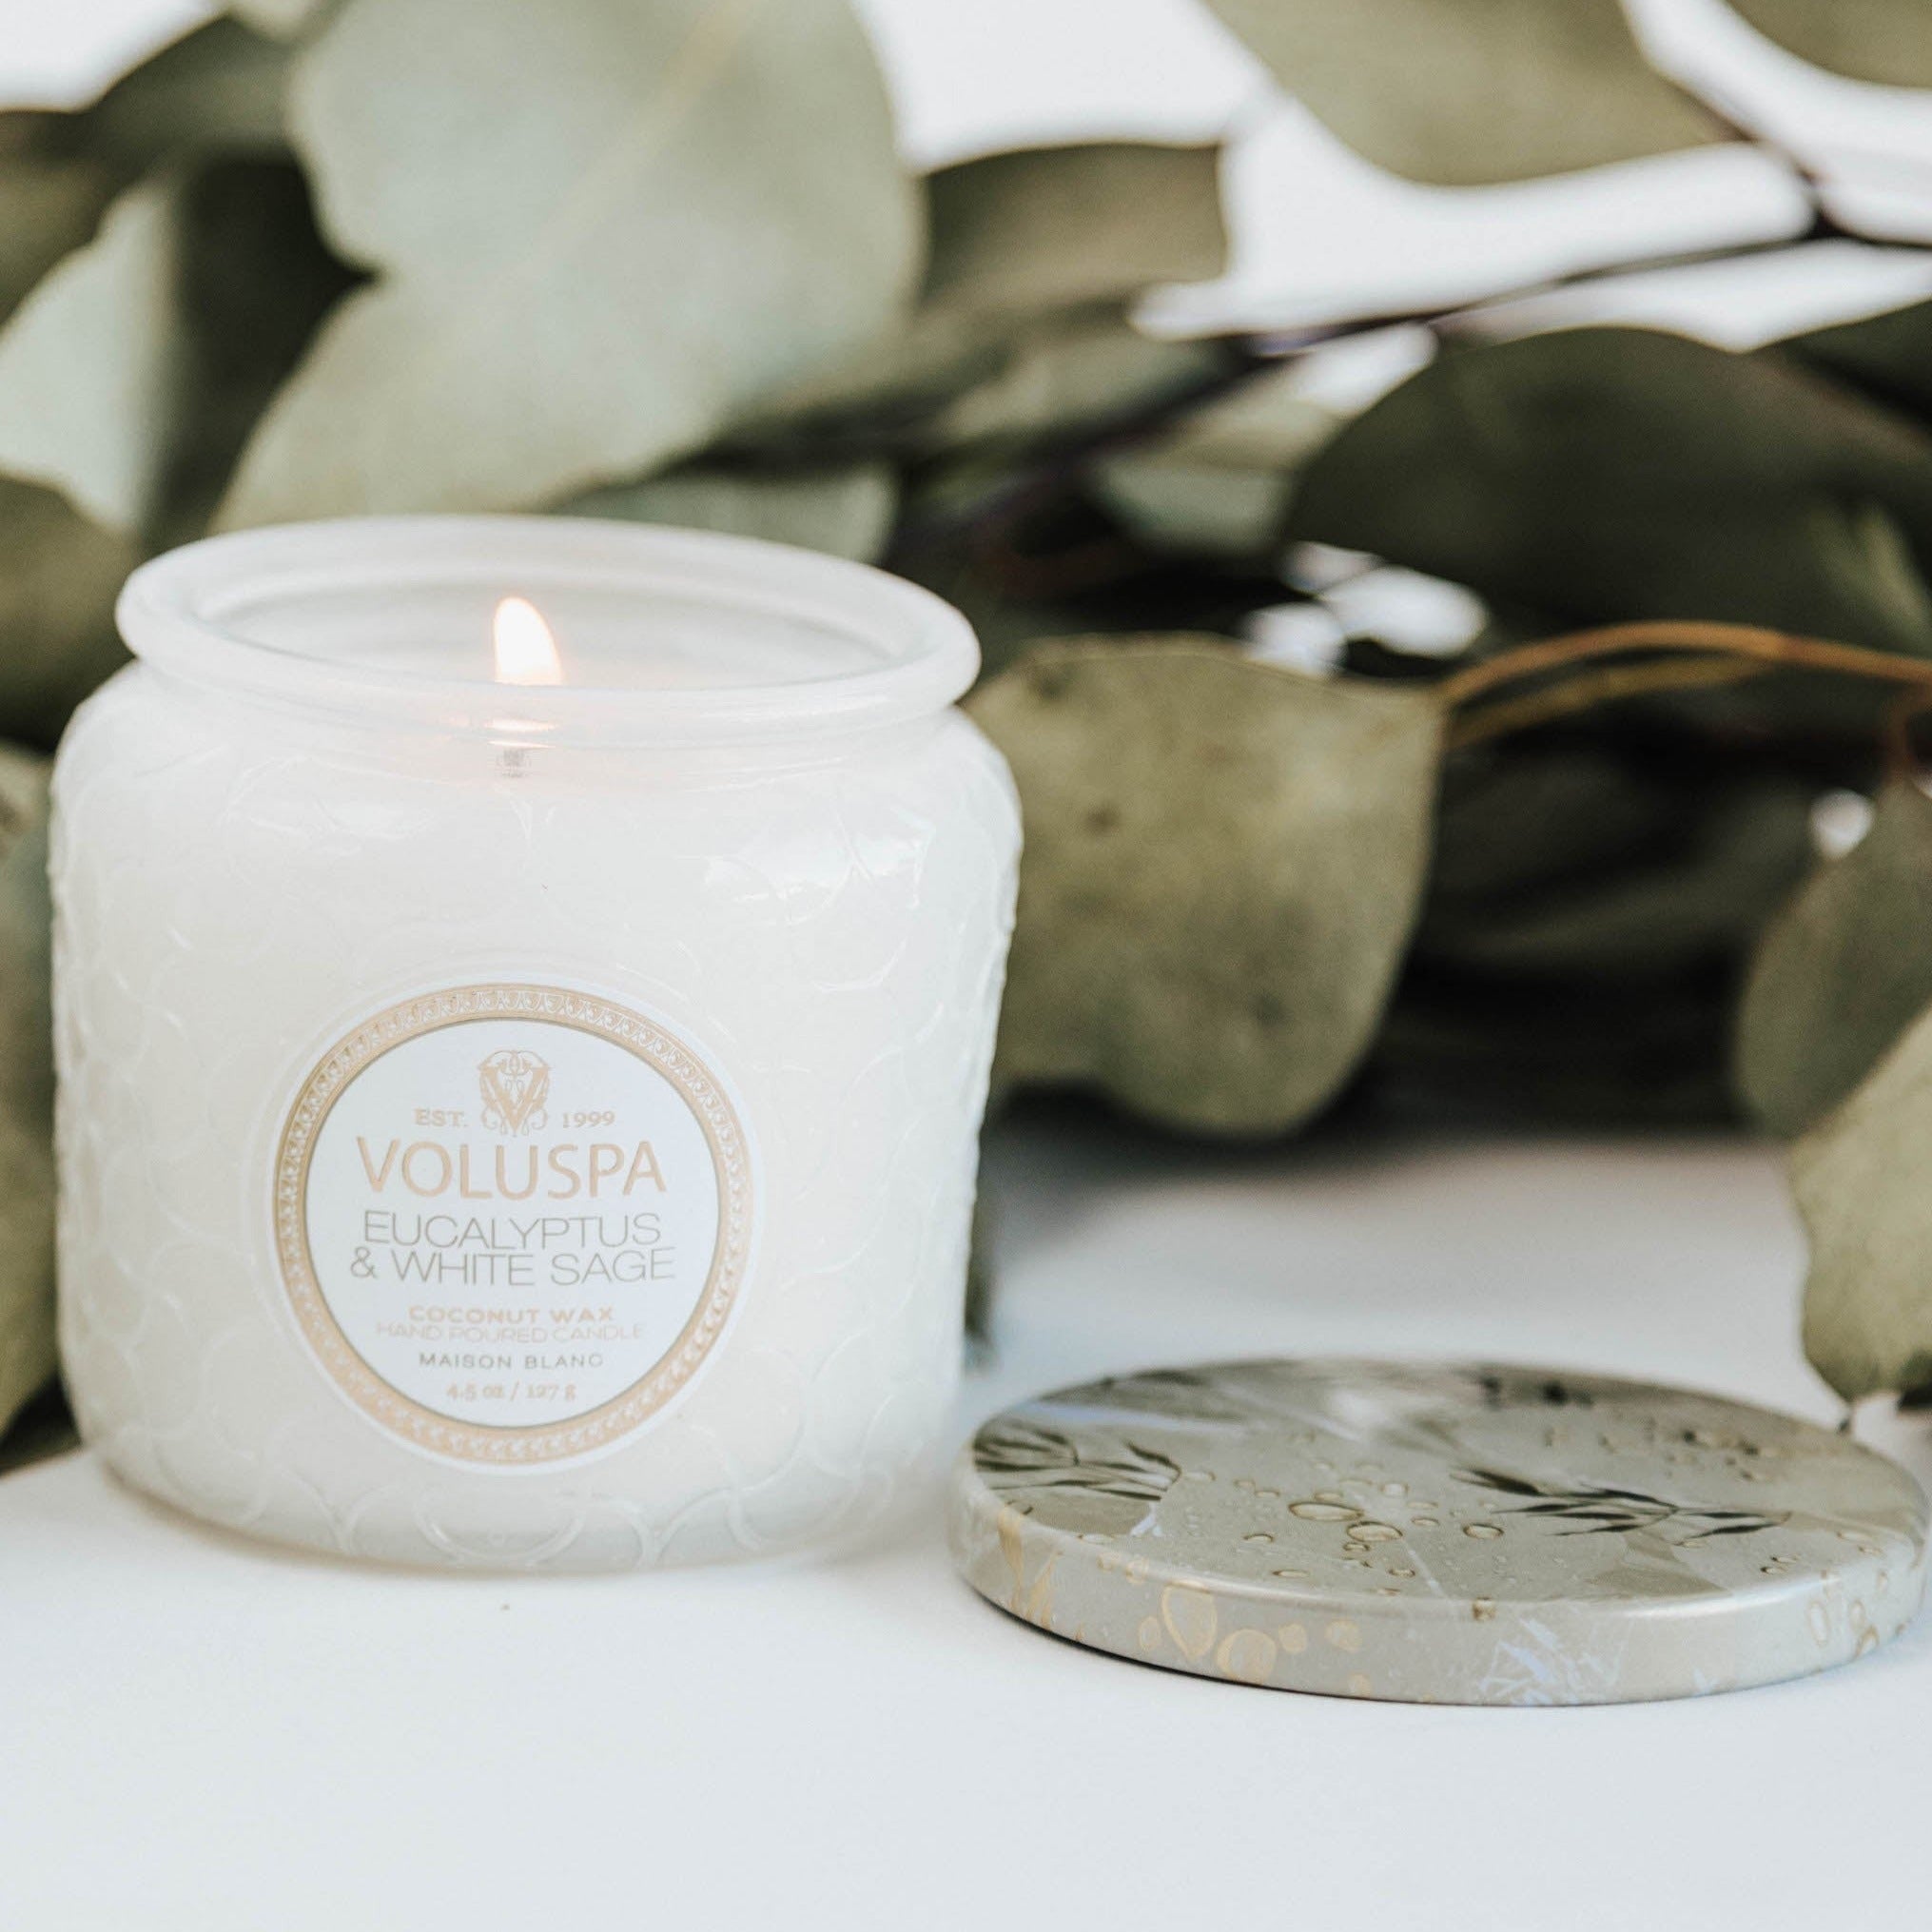 Voluspa - Gardenia Colonia Luxe Candle